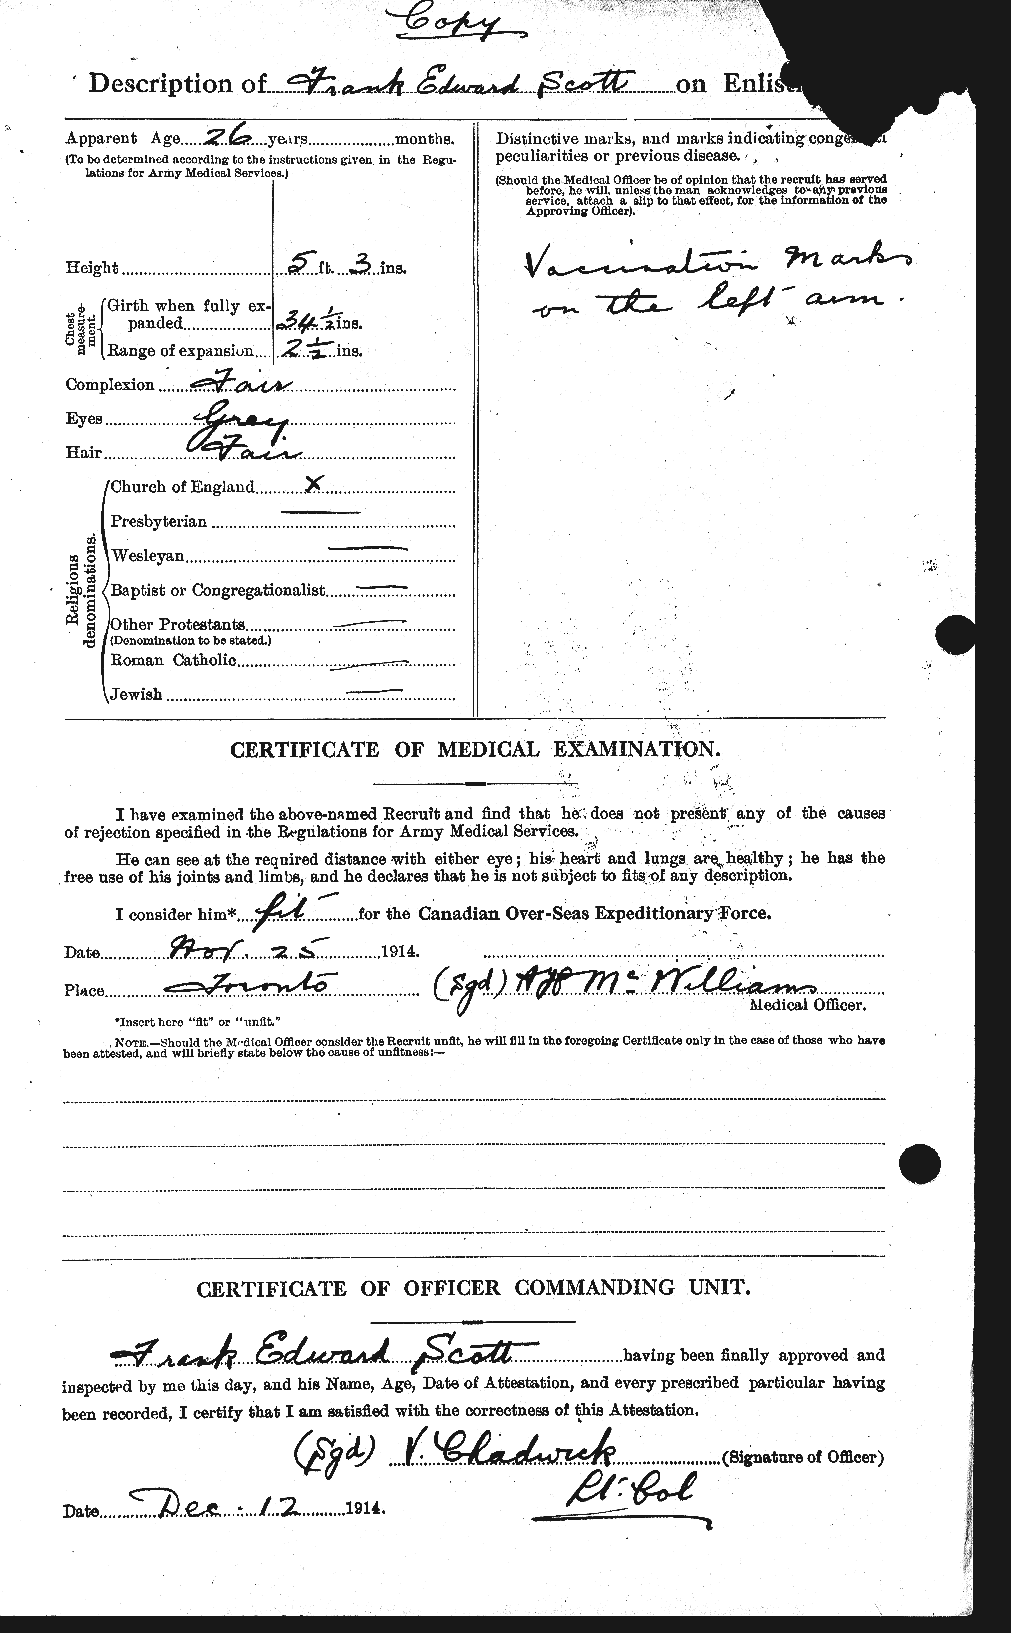 Dossiers du Personnel de la Première Guerre mondiale - CEC 084702b